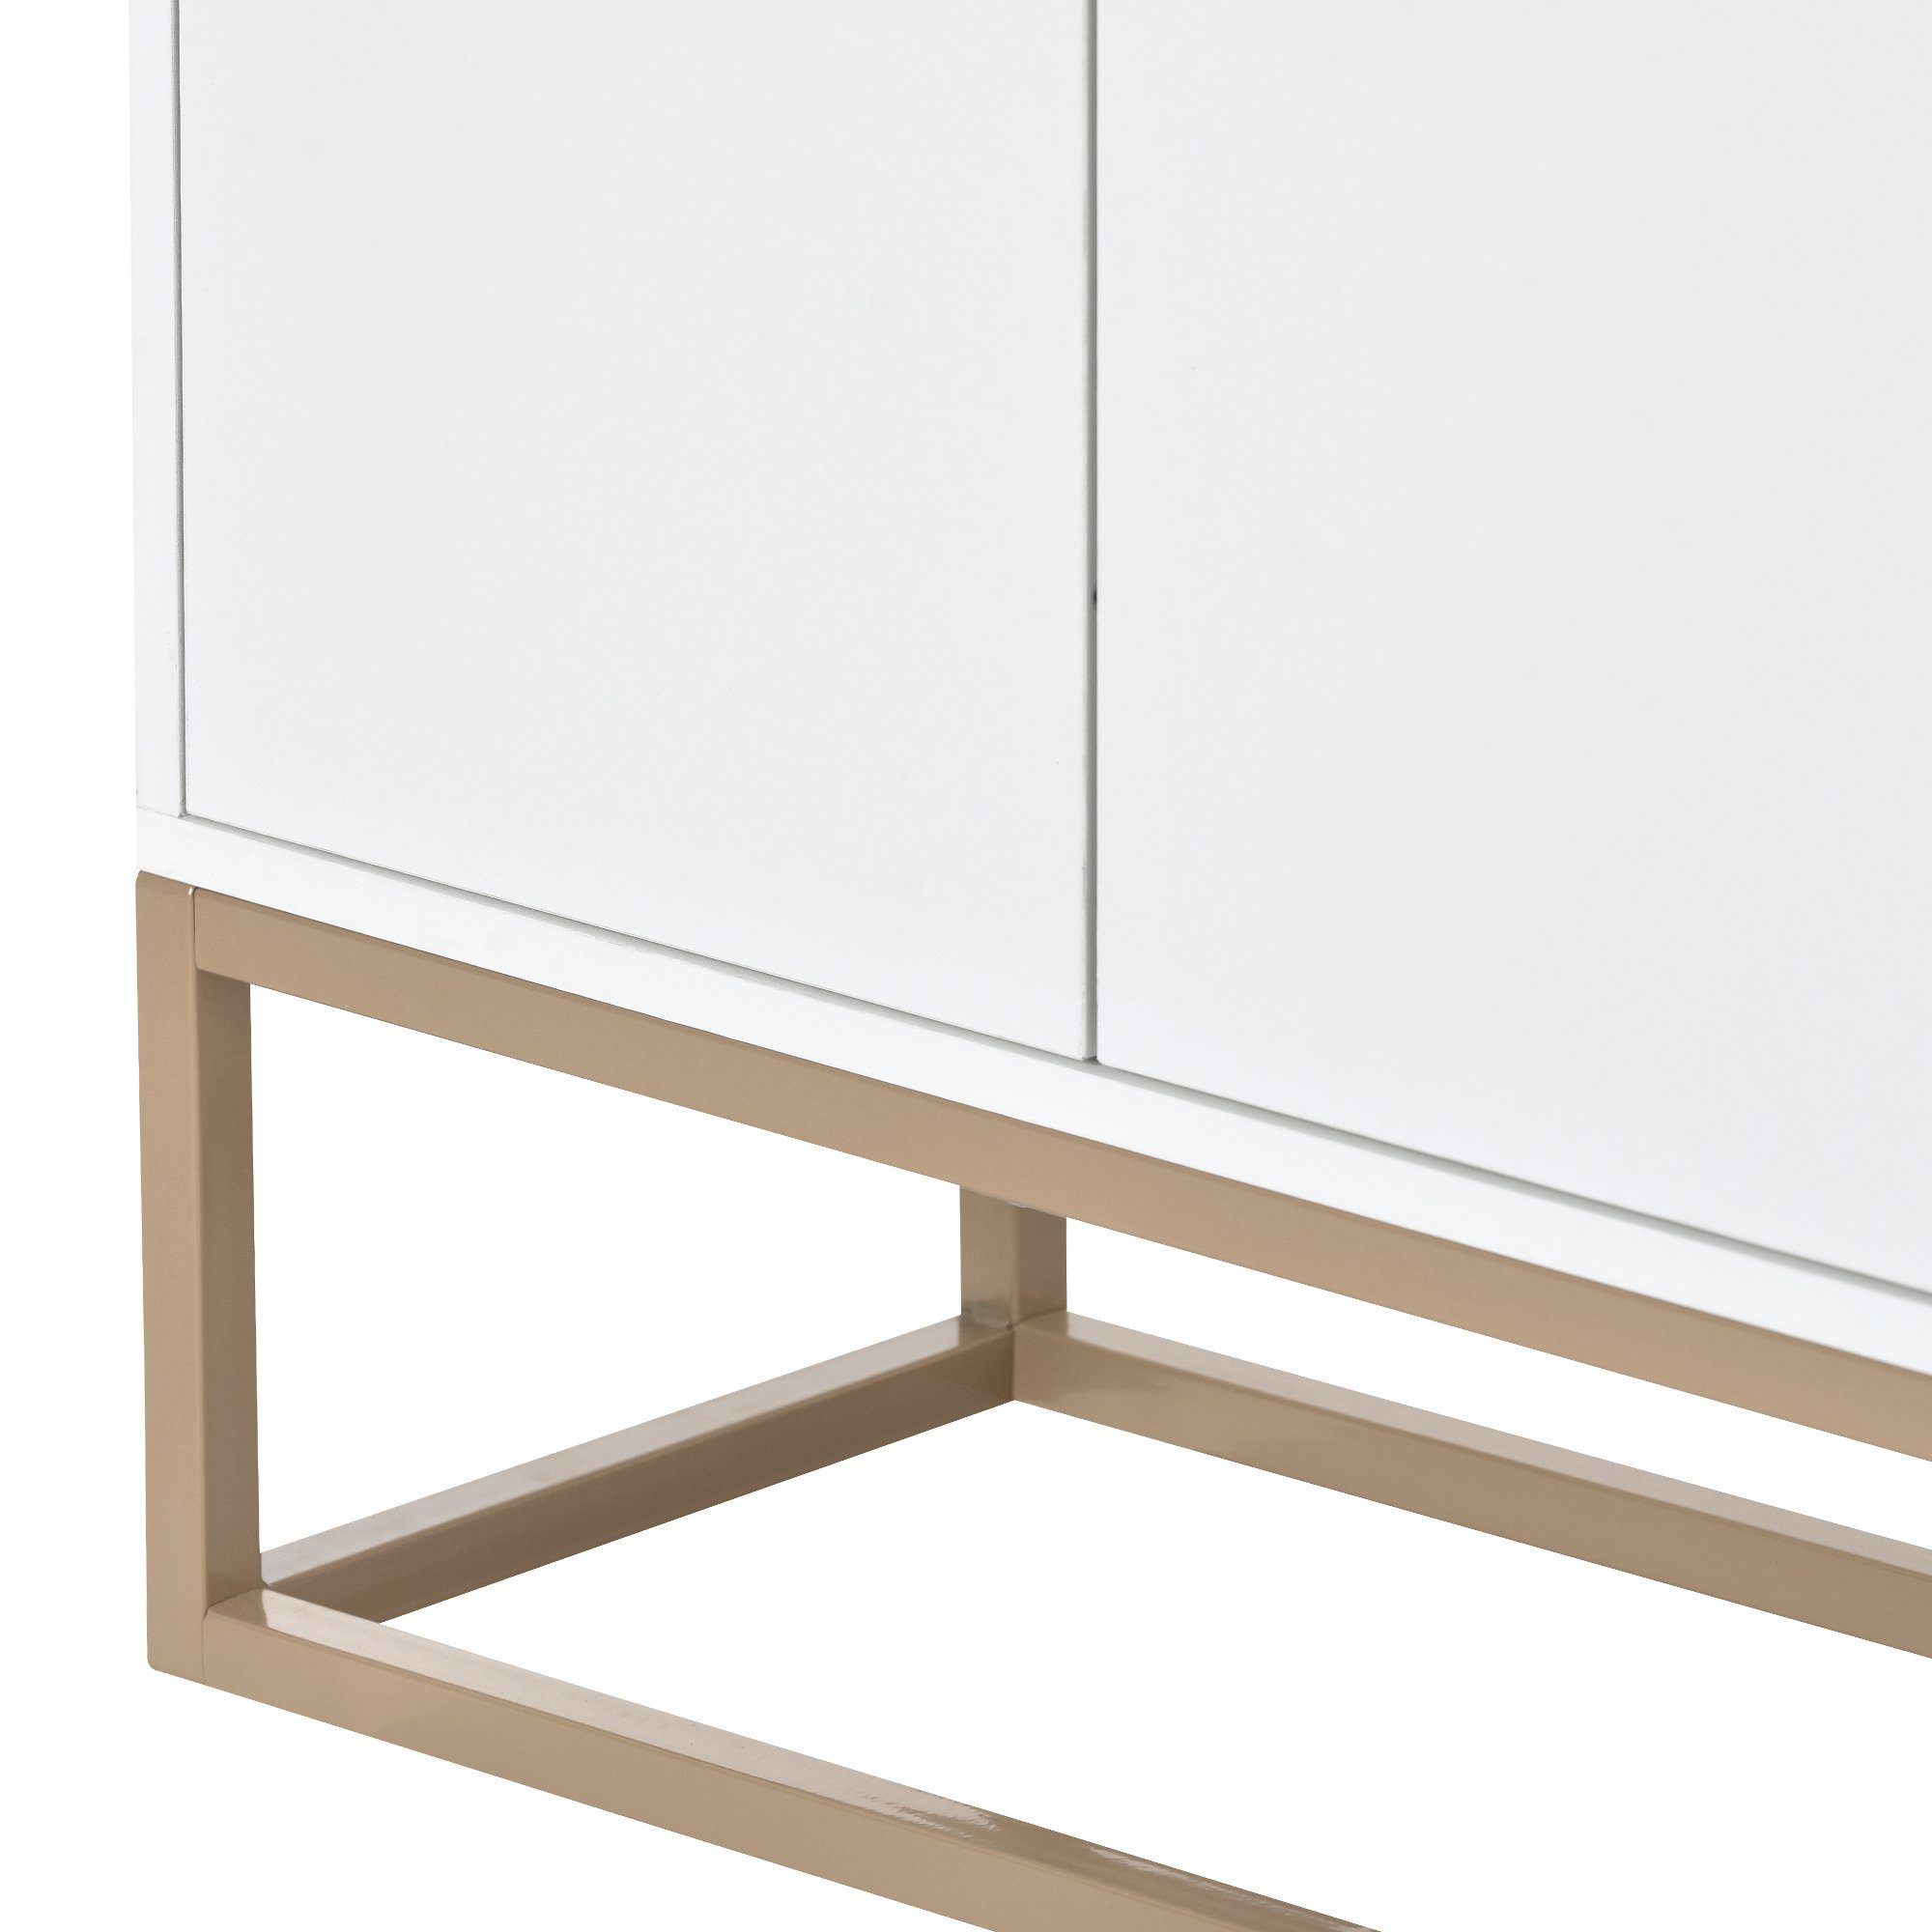 WISHDOR Anrichte Küche) Küchenschrank, 4-türiger (griffloser Buffetschrank weiß minimalistischen Modernes Sideboard für Esszimmer, Wohnzimmer, im Stil